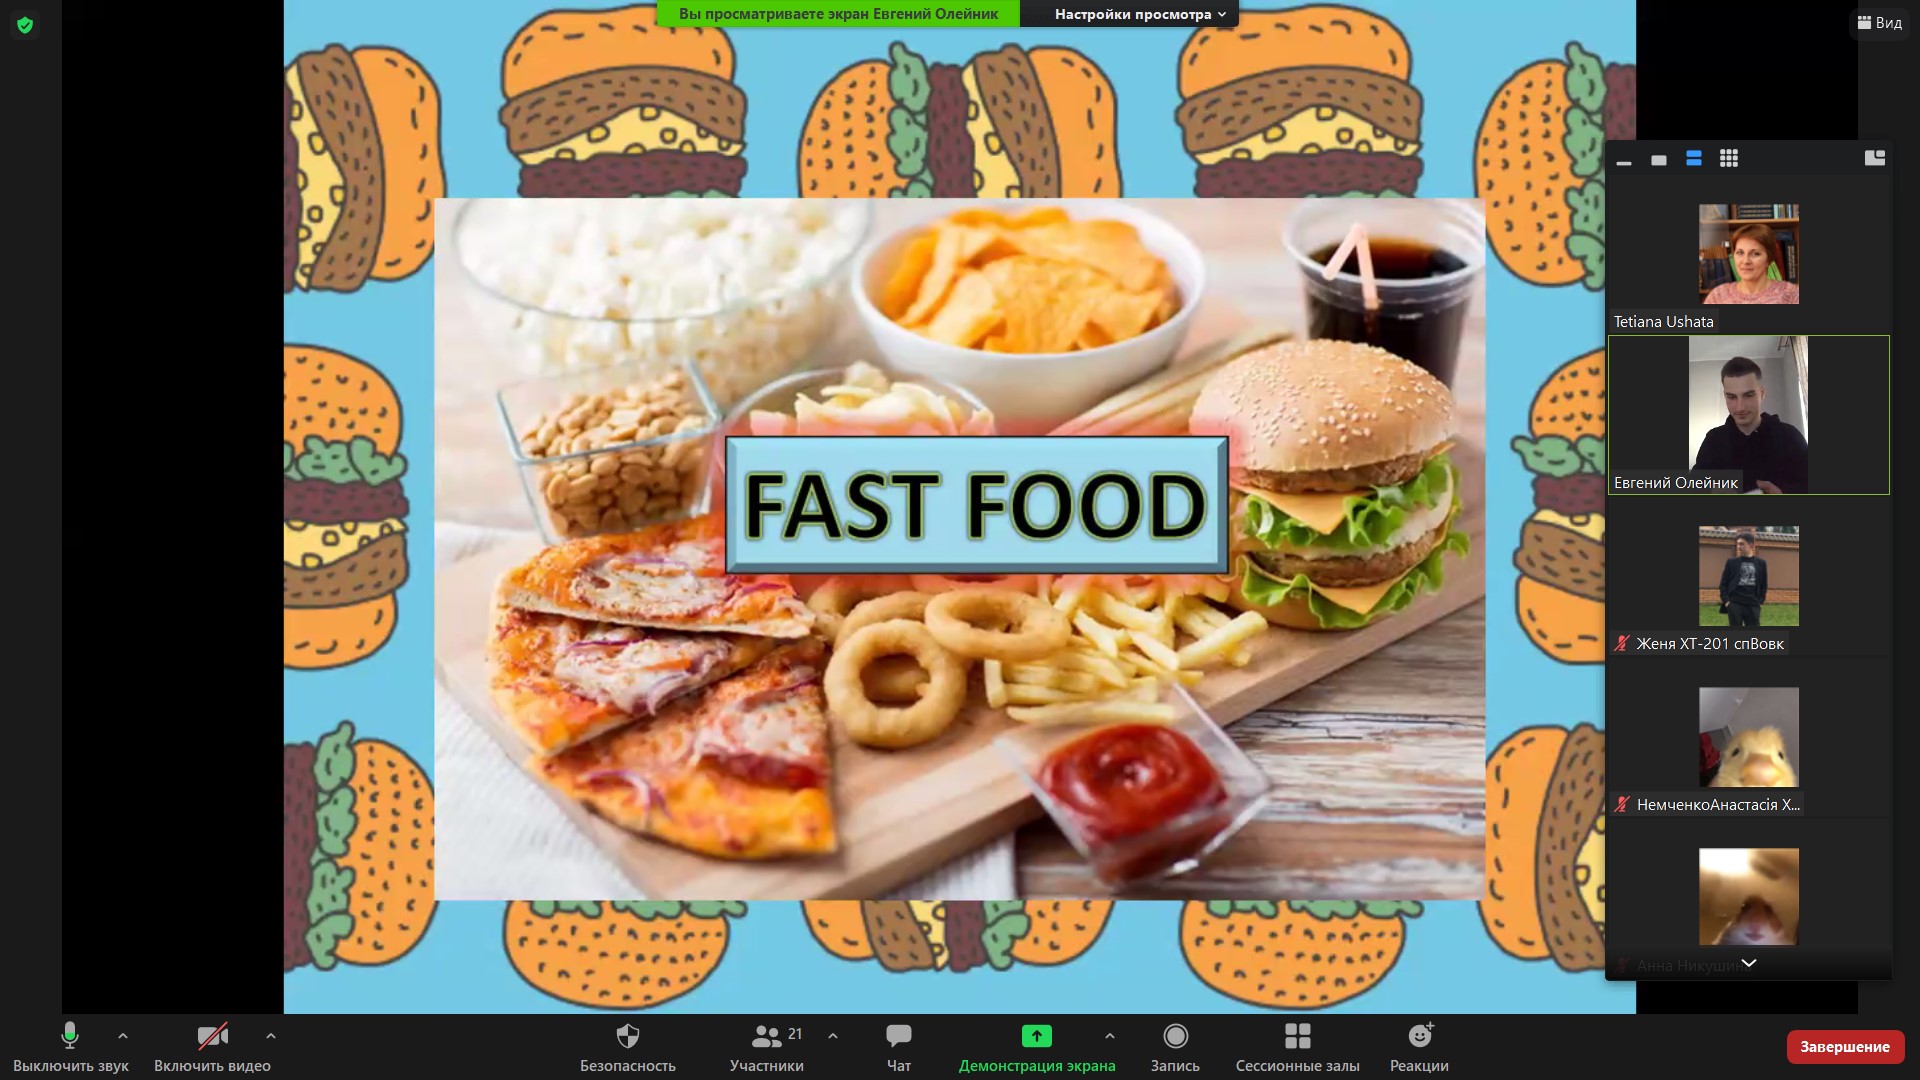 Healthy eating versus fast food